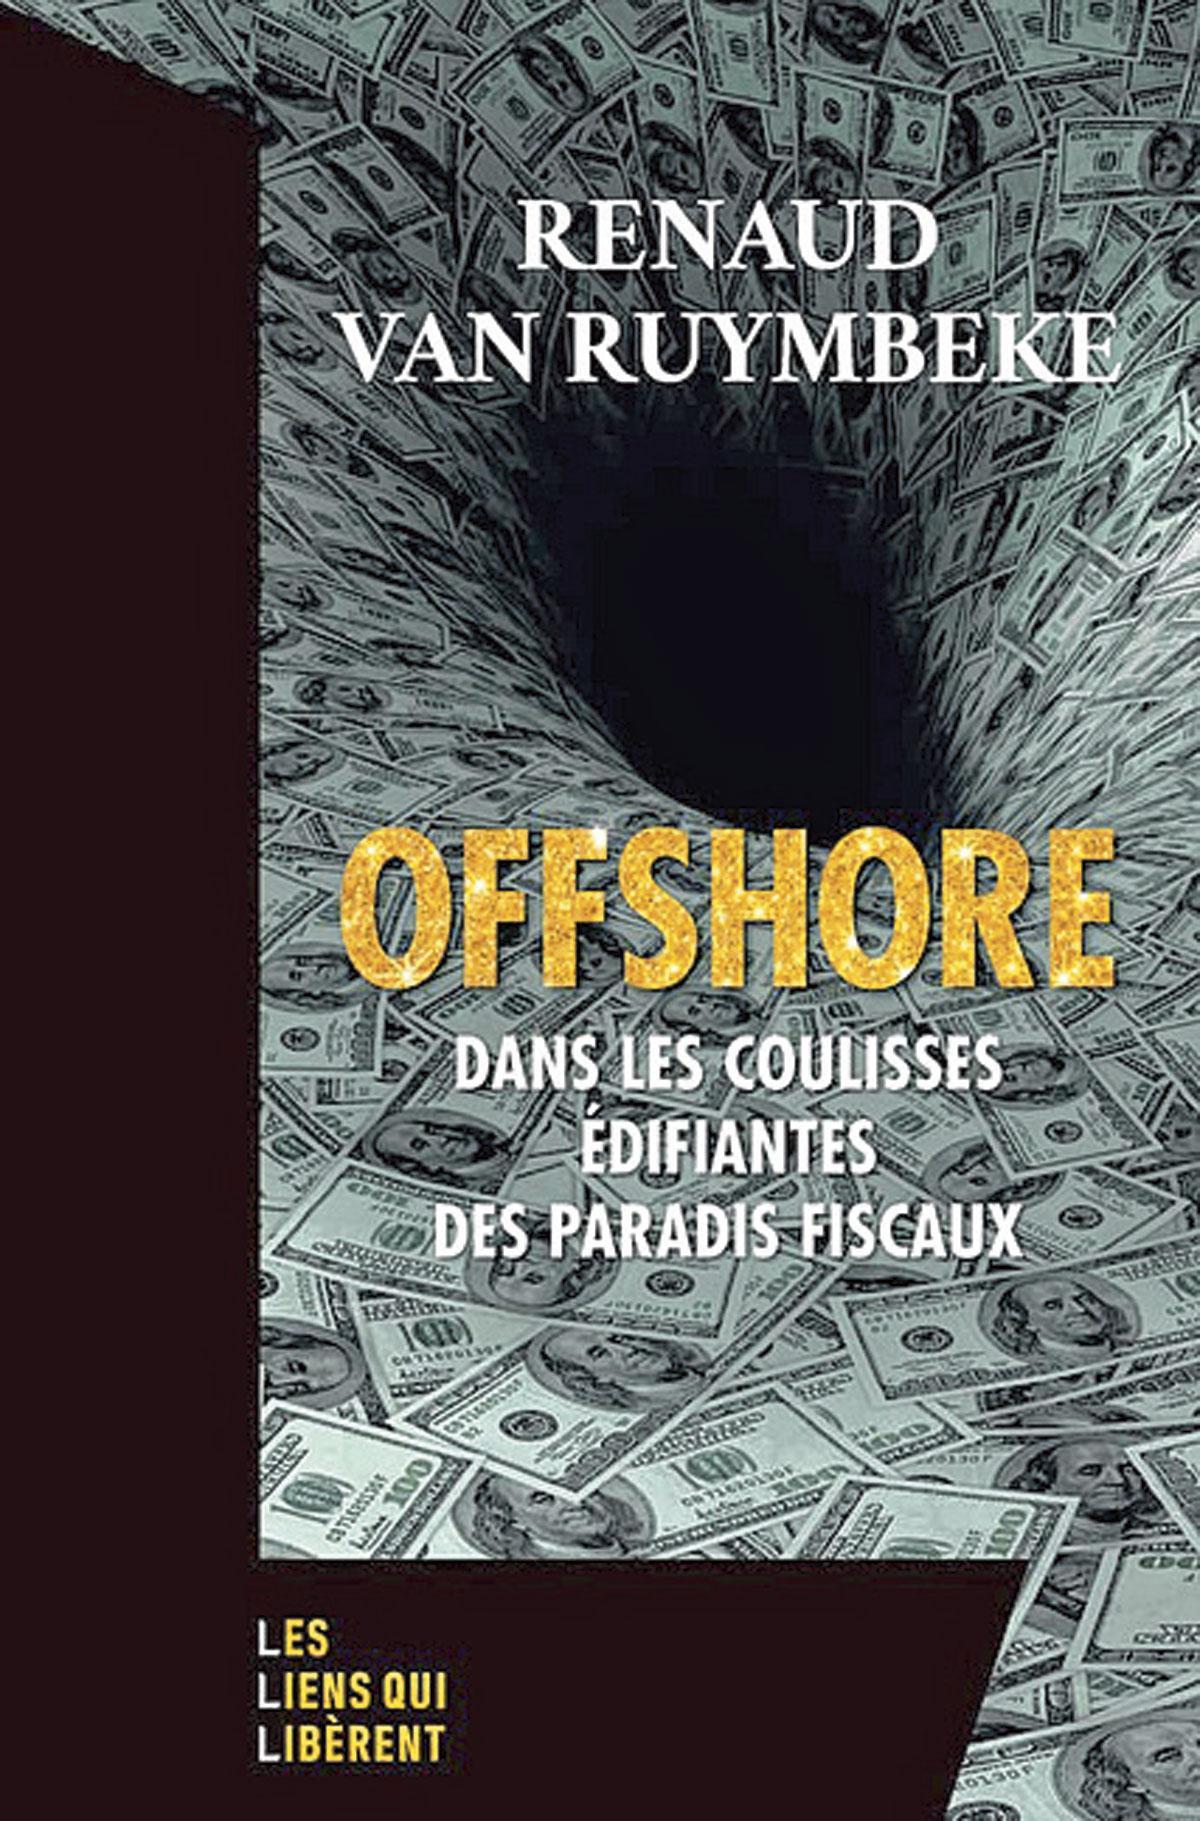 (1) Offshore. Dans les coulisses édifiantes des paradis fiscaux, par Renaud Van Ruymbeke, Les Liens qui libèrent, 265 p.